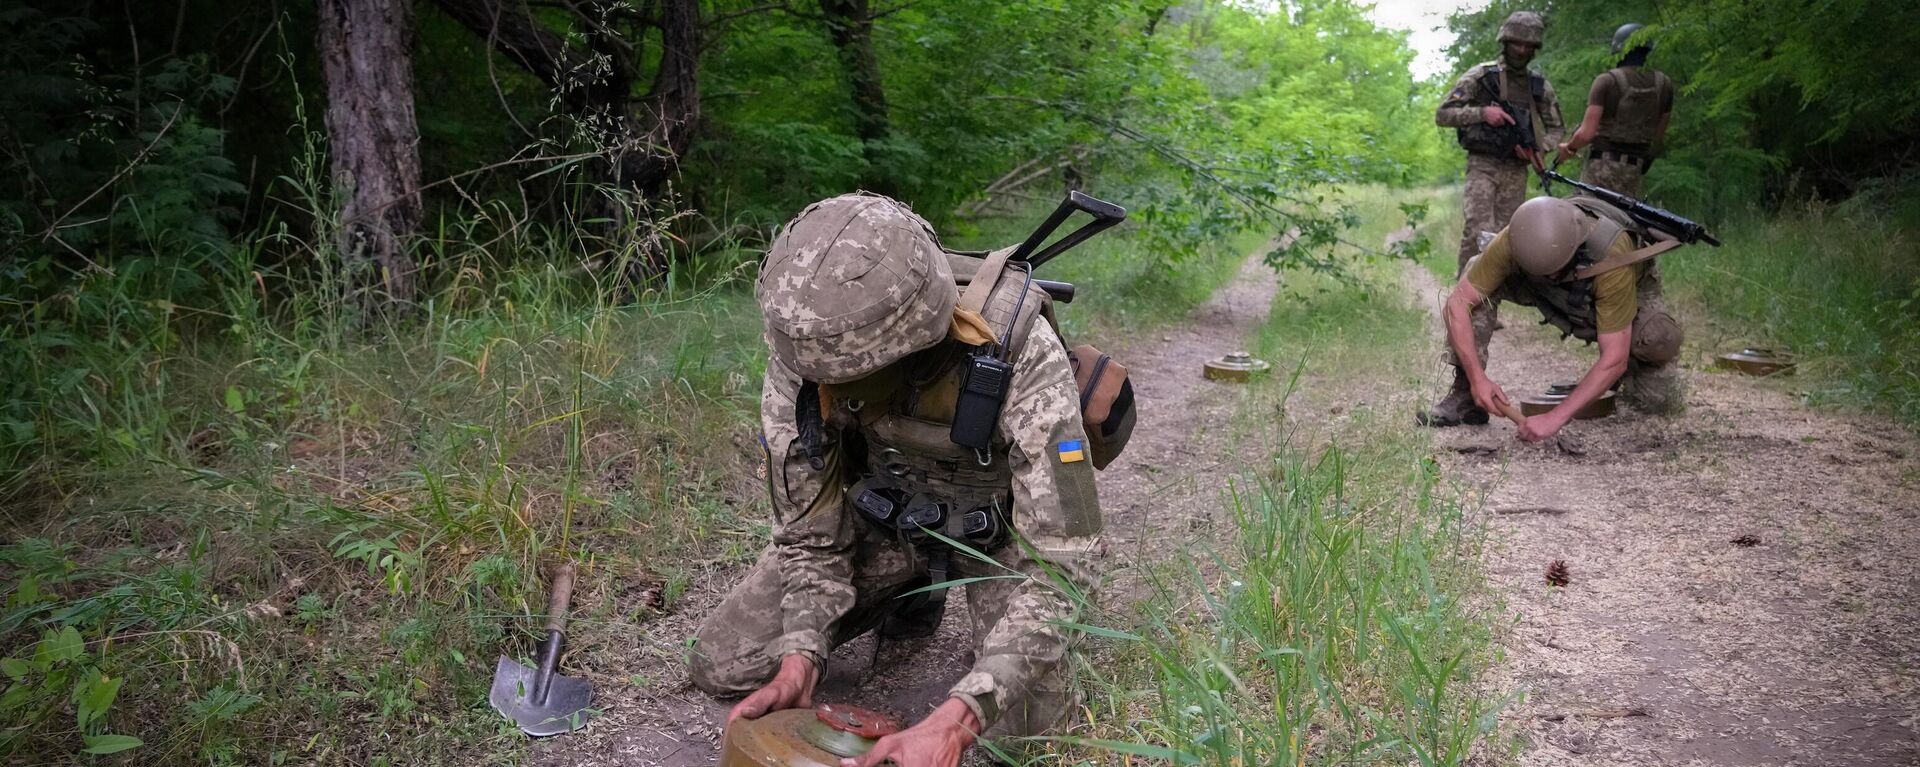 Soldados ucranianos instalam minas antitanque na floresta, Ucrânia, 14 de junho de 2022 - Sputnik Brasil, 1920, 15.06.2022